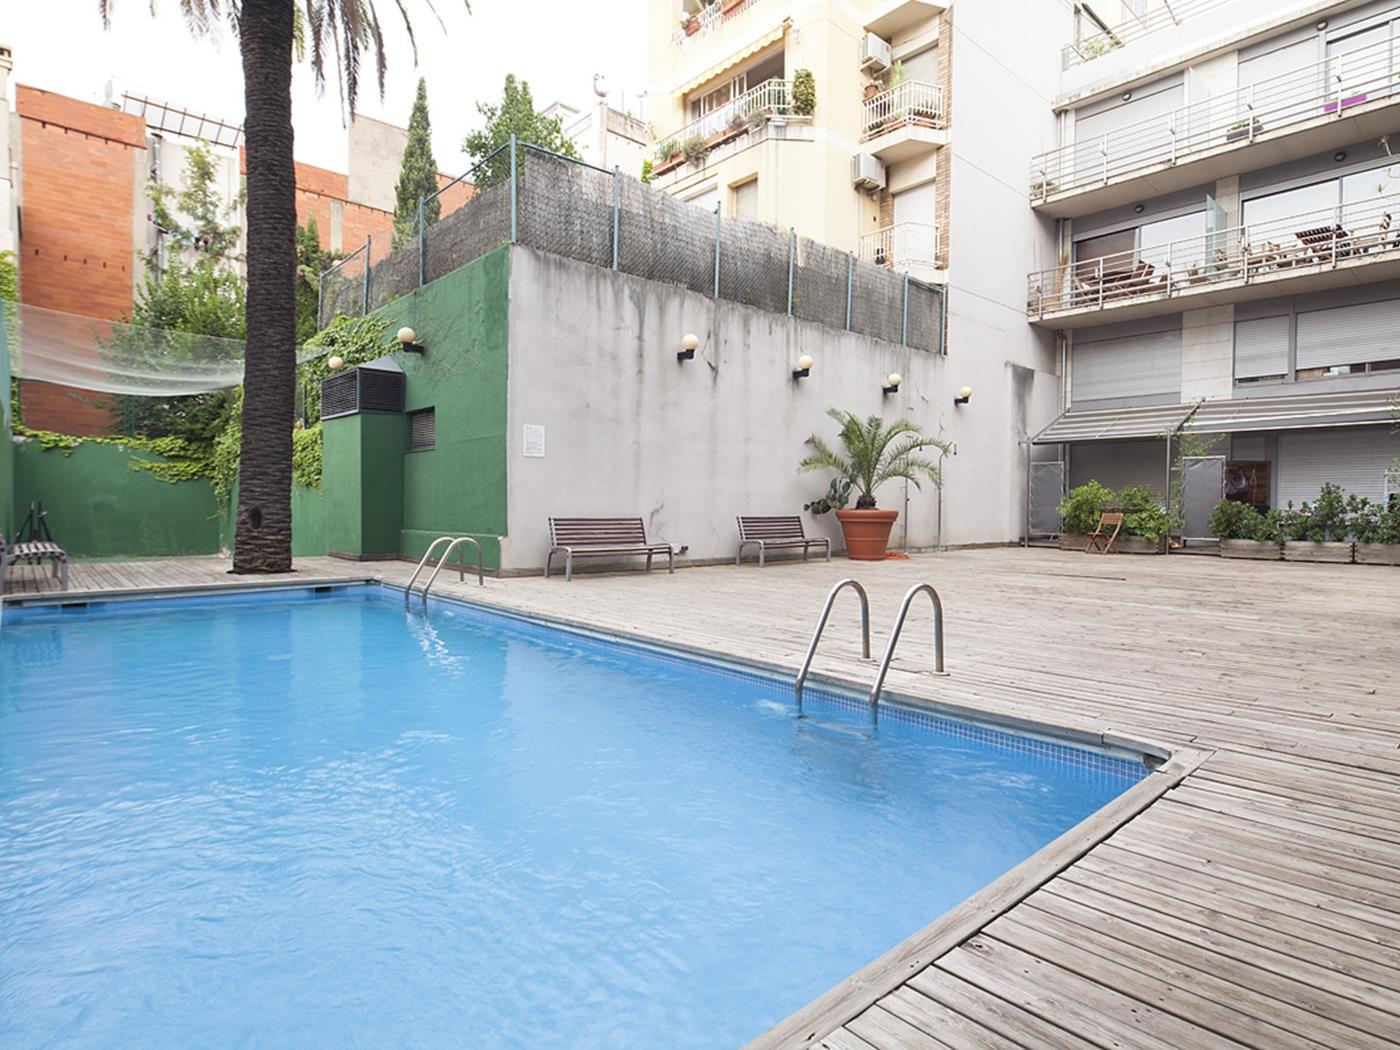 Piso en alquiler para estudiantes de Erasmus muy cerca de escuelas de negocios - My Space Barcelona Apartamentos